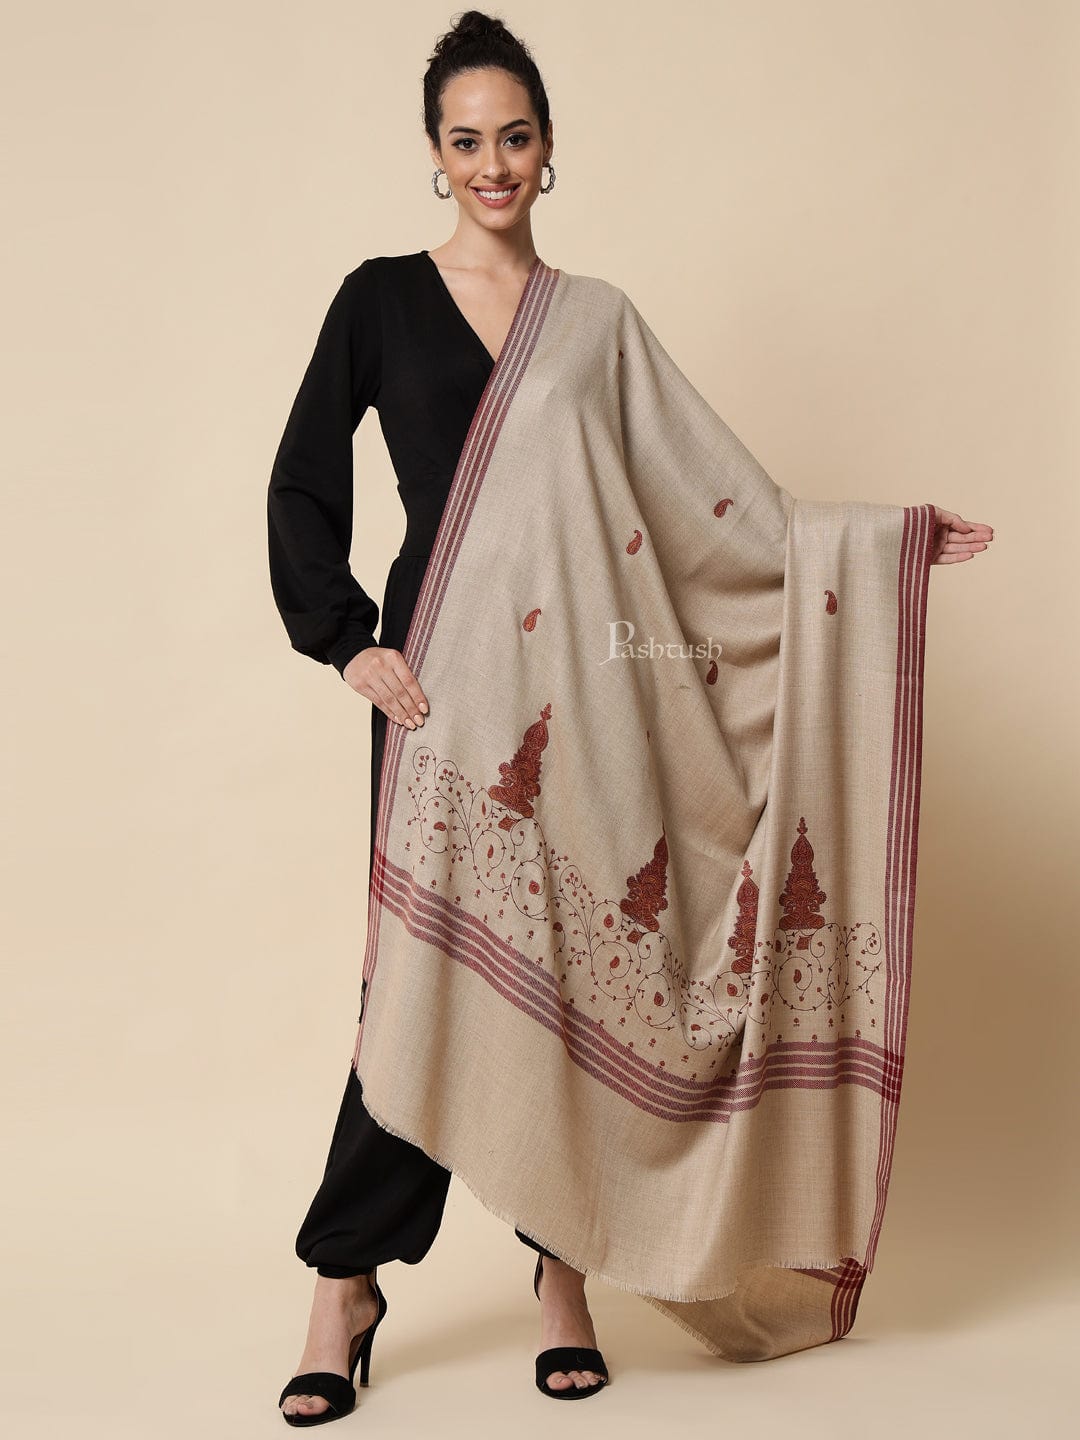 Pashtush India Womens Shawls Pashtush womens Woollen shawl, Embroidery design, Light Beige